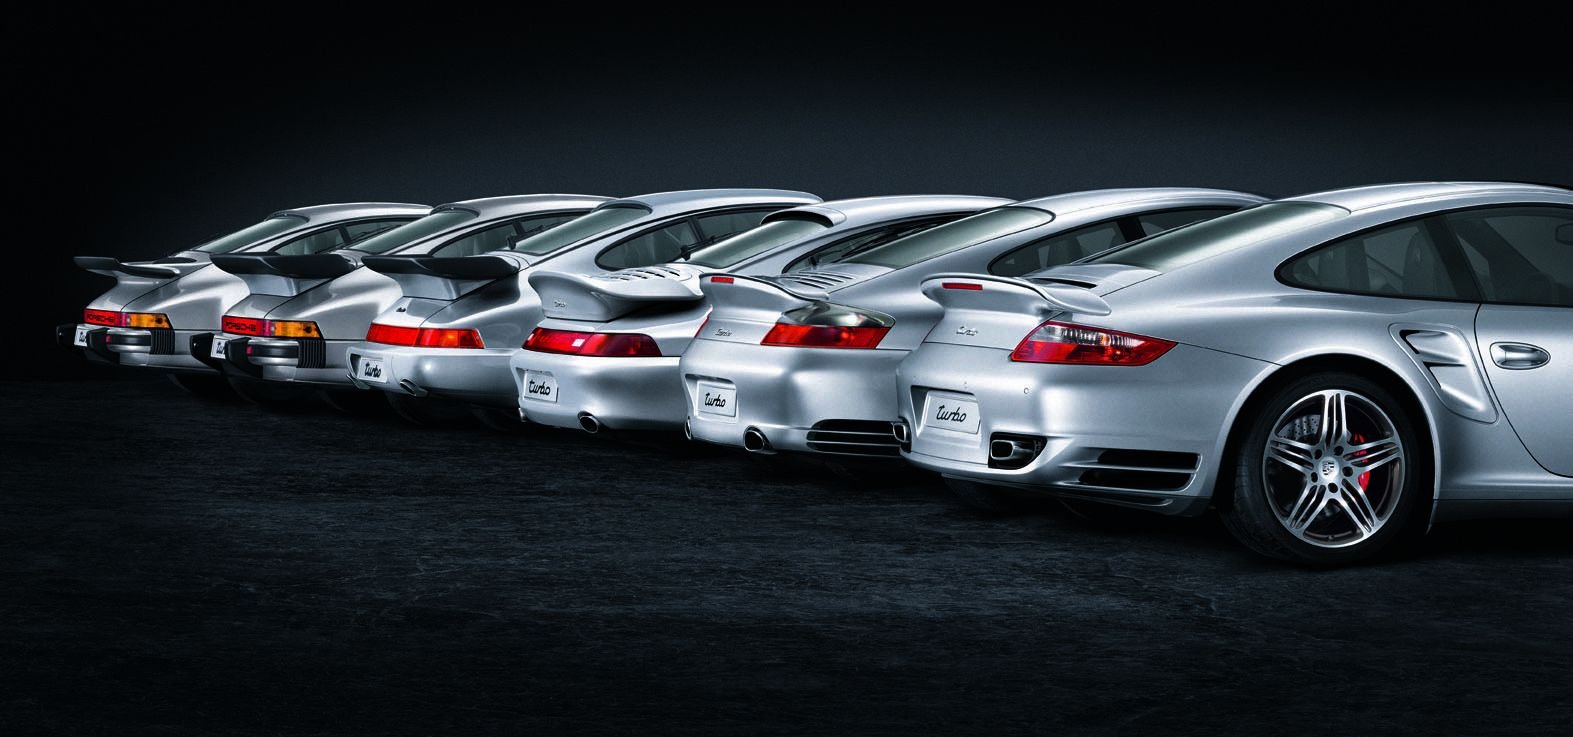 Für jeden Tag und für besondere Tage: Test: Porsche 911 Turbo S - WELT